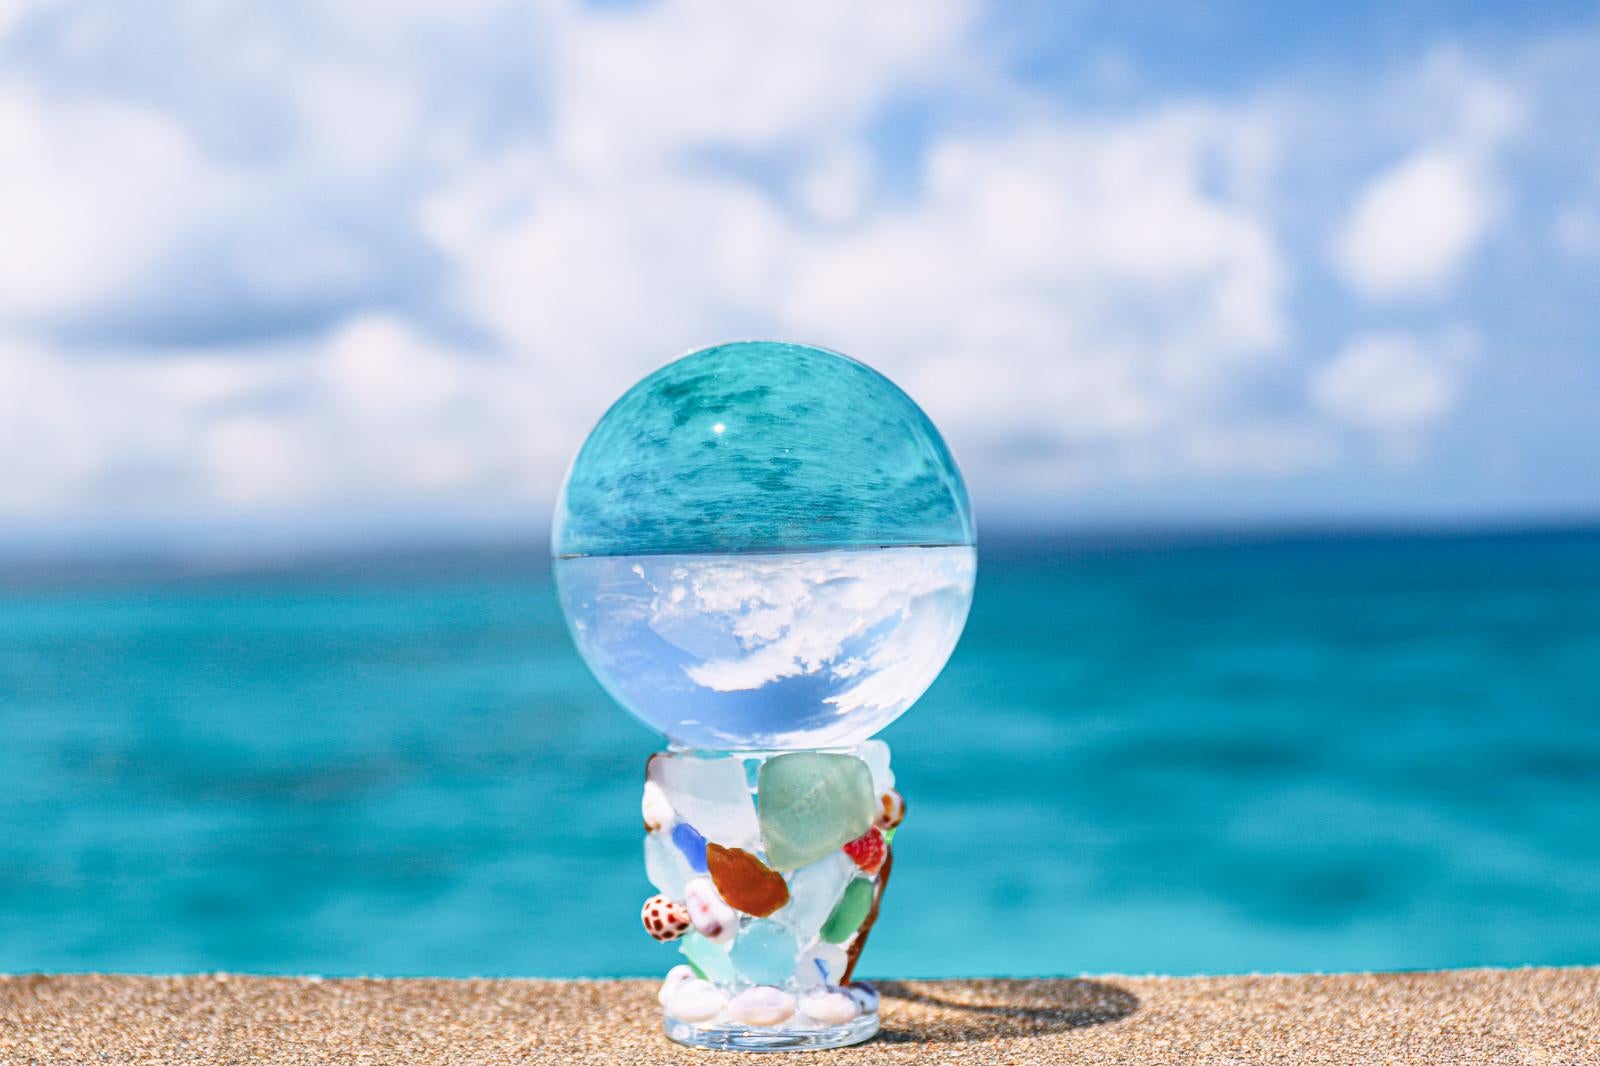 「ガラス玉に映り込む青い海」の写真